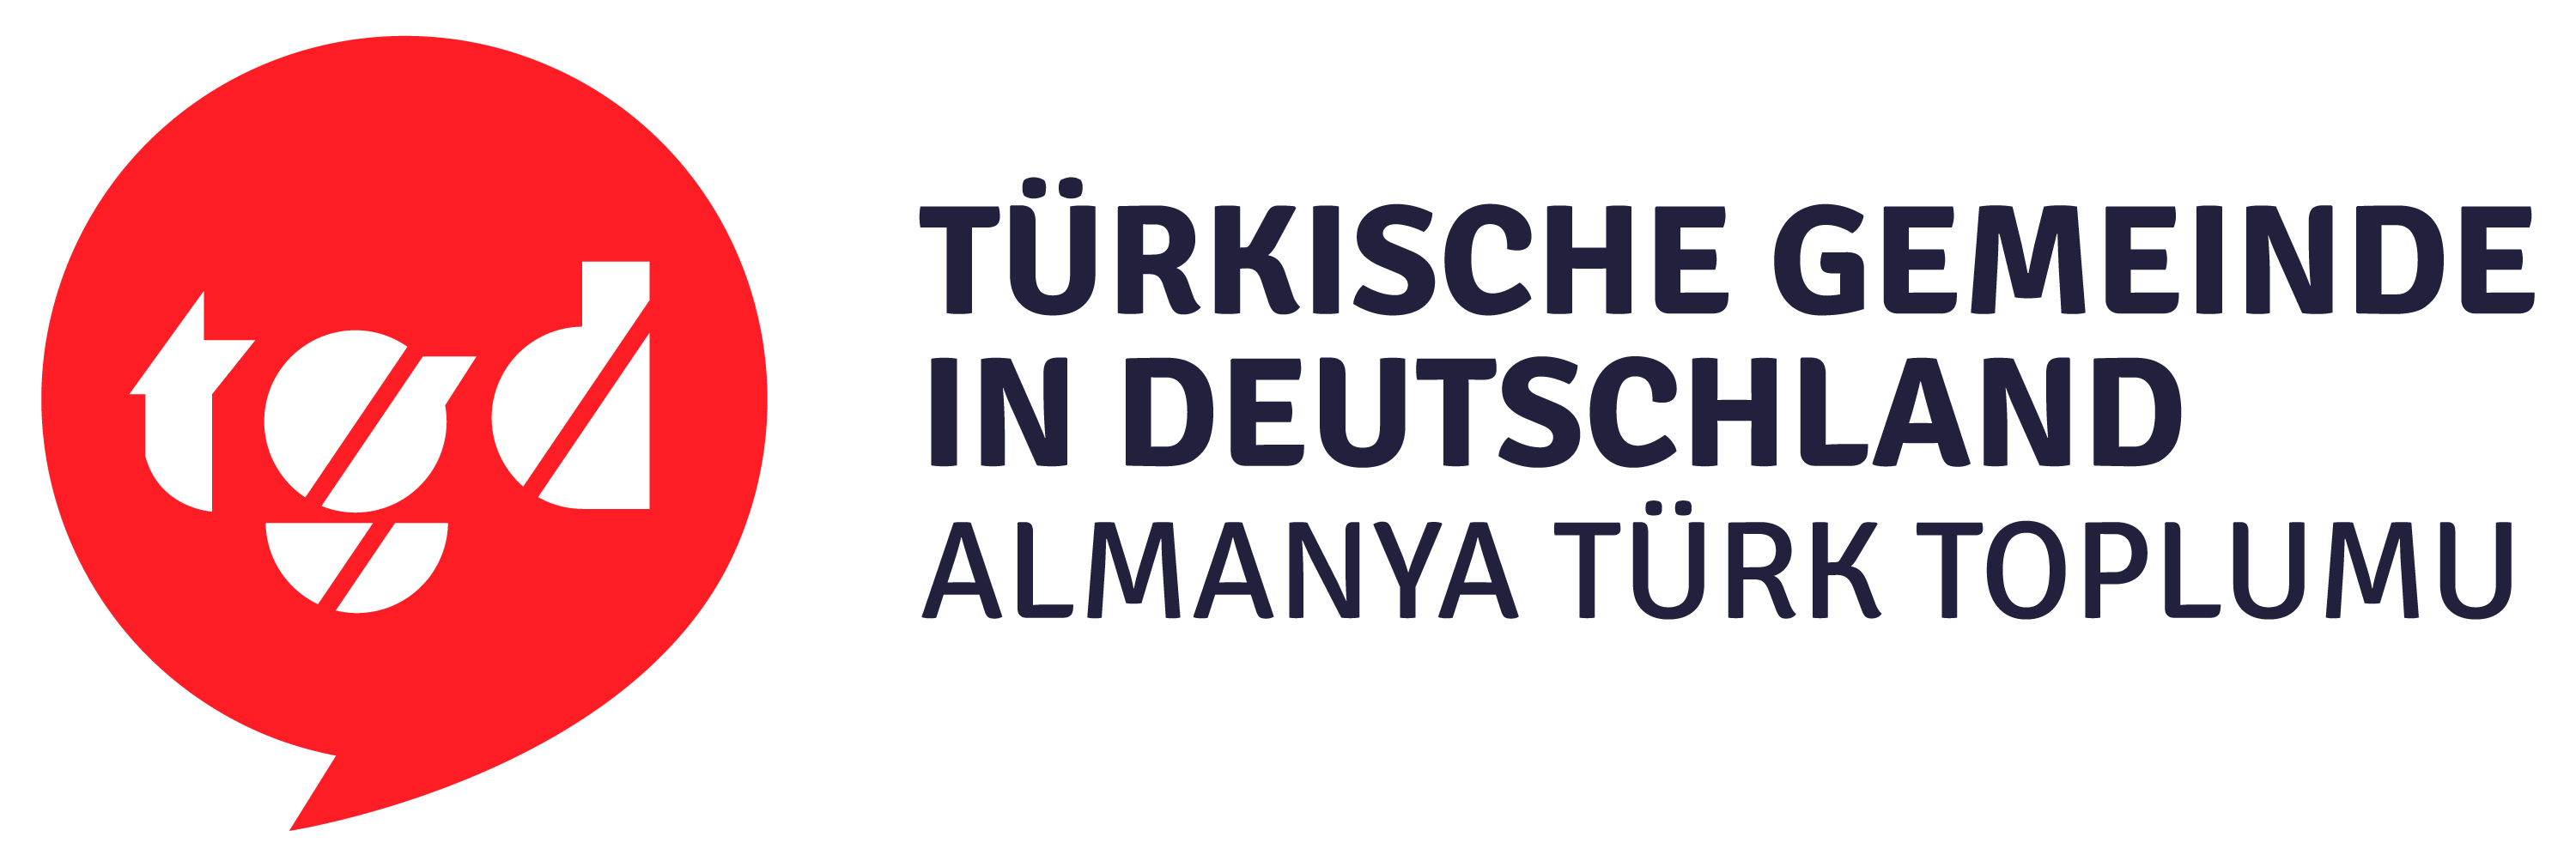 Links: rote sprechblase mit weißen Buchstaben tgd, rechts: Türkische Gemeinde in Deutschland